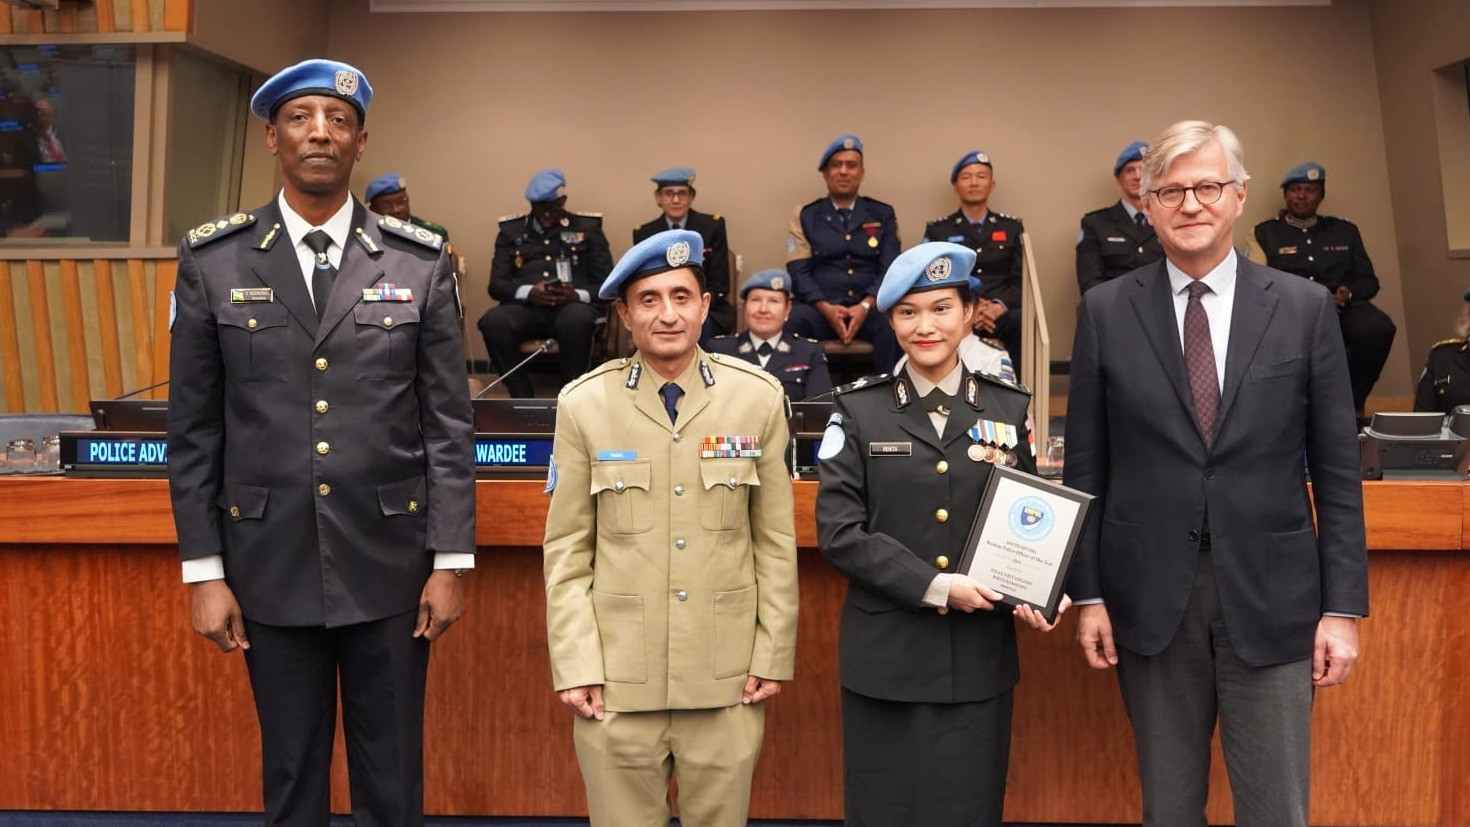 Perserikatan Bangsa Bangsa (PBB) telah memberikan penghargaan kepada Briptu Renita Rismayanti pada Kamis (16/11/23) dalam ajang Pekan Polisi PBB tahunan di Markas Besar PBB New York.